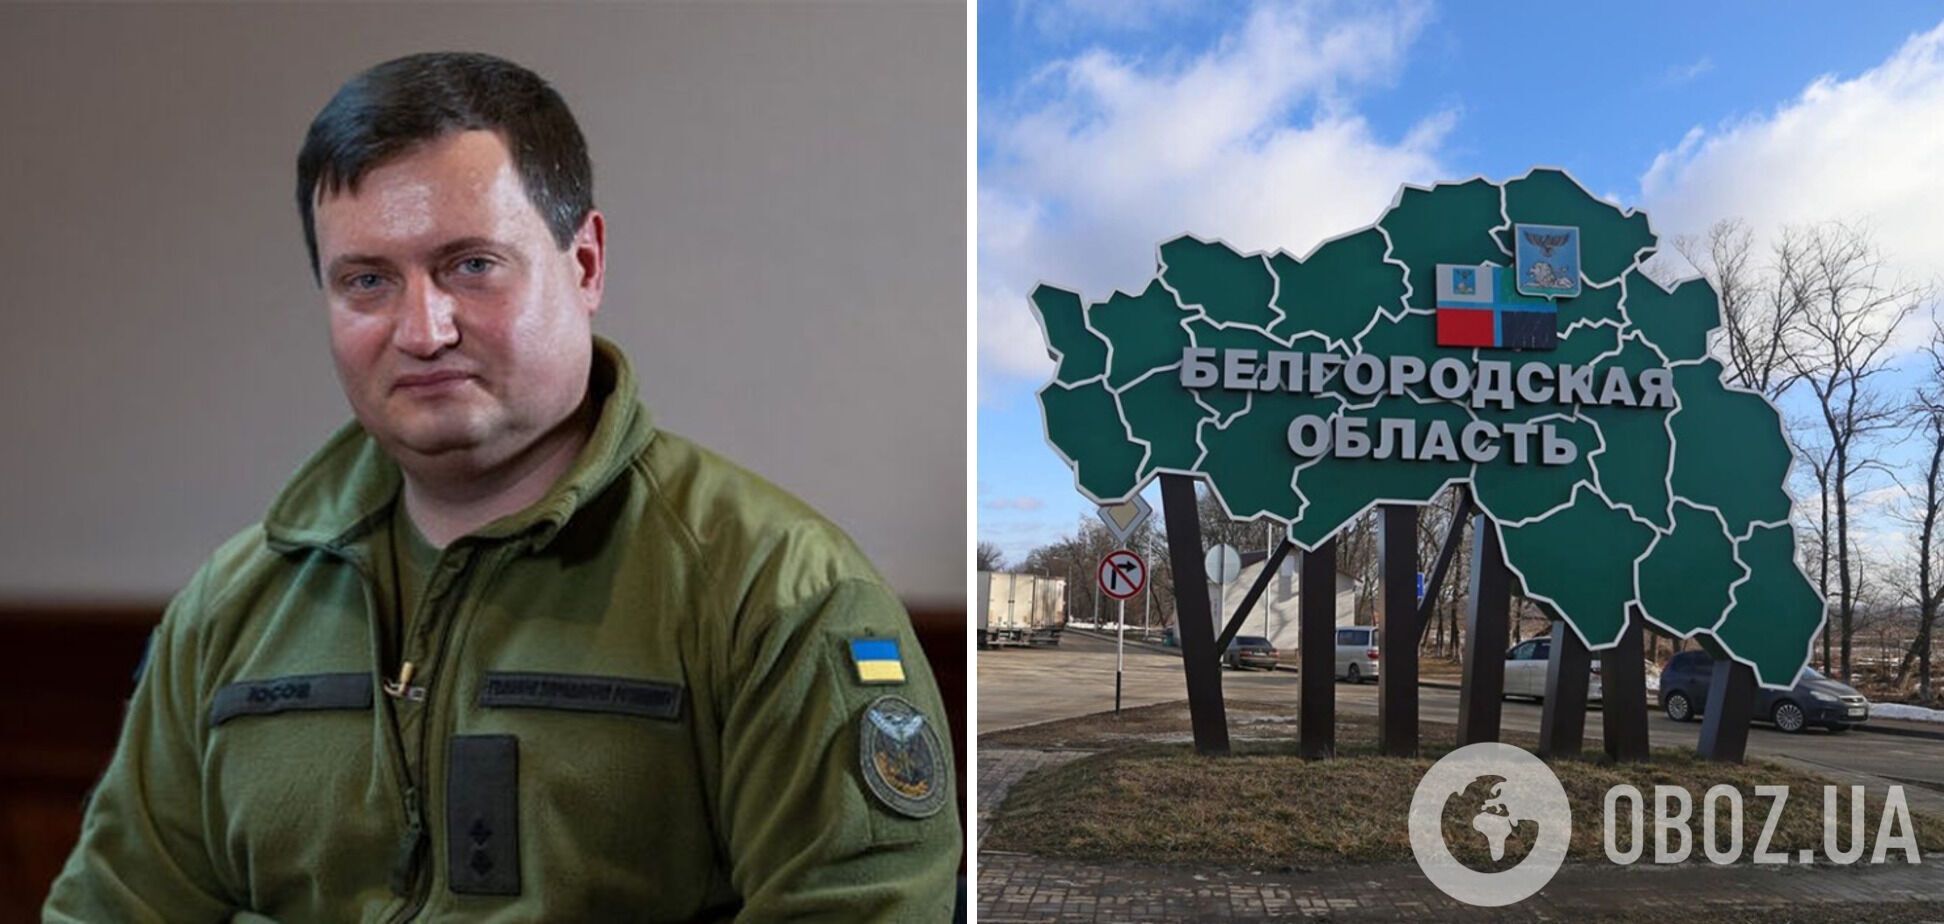 Під час операції у Бєлгородській області було зібрано інформацію, важливу для української розвідки, – Юсов